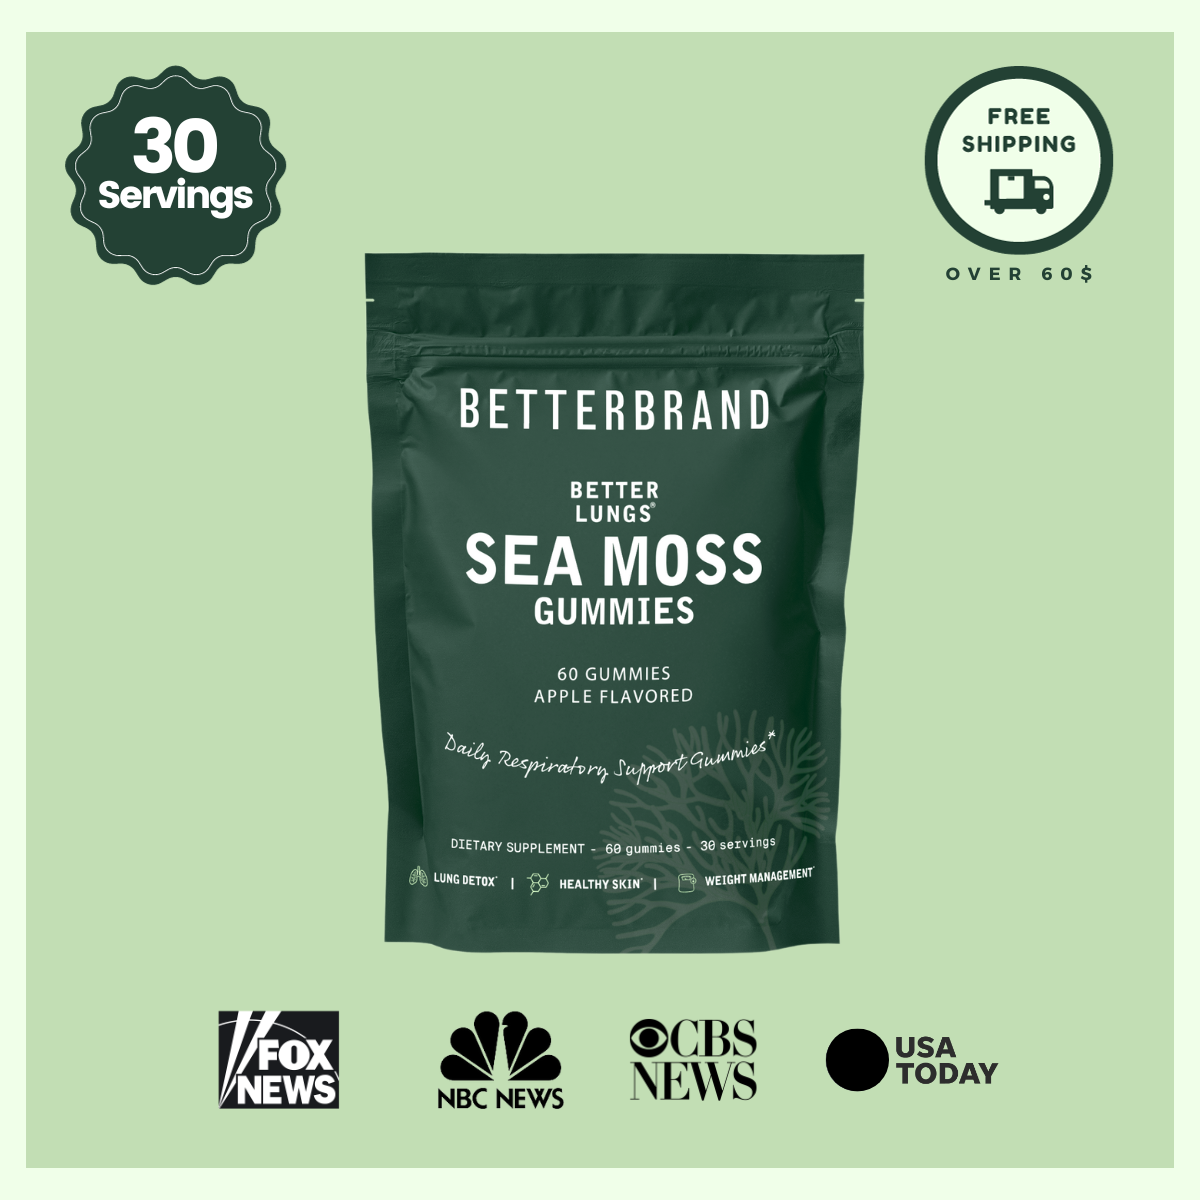 BetterLungs® Sea Moss Gummies - Betterbrand